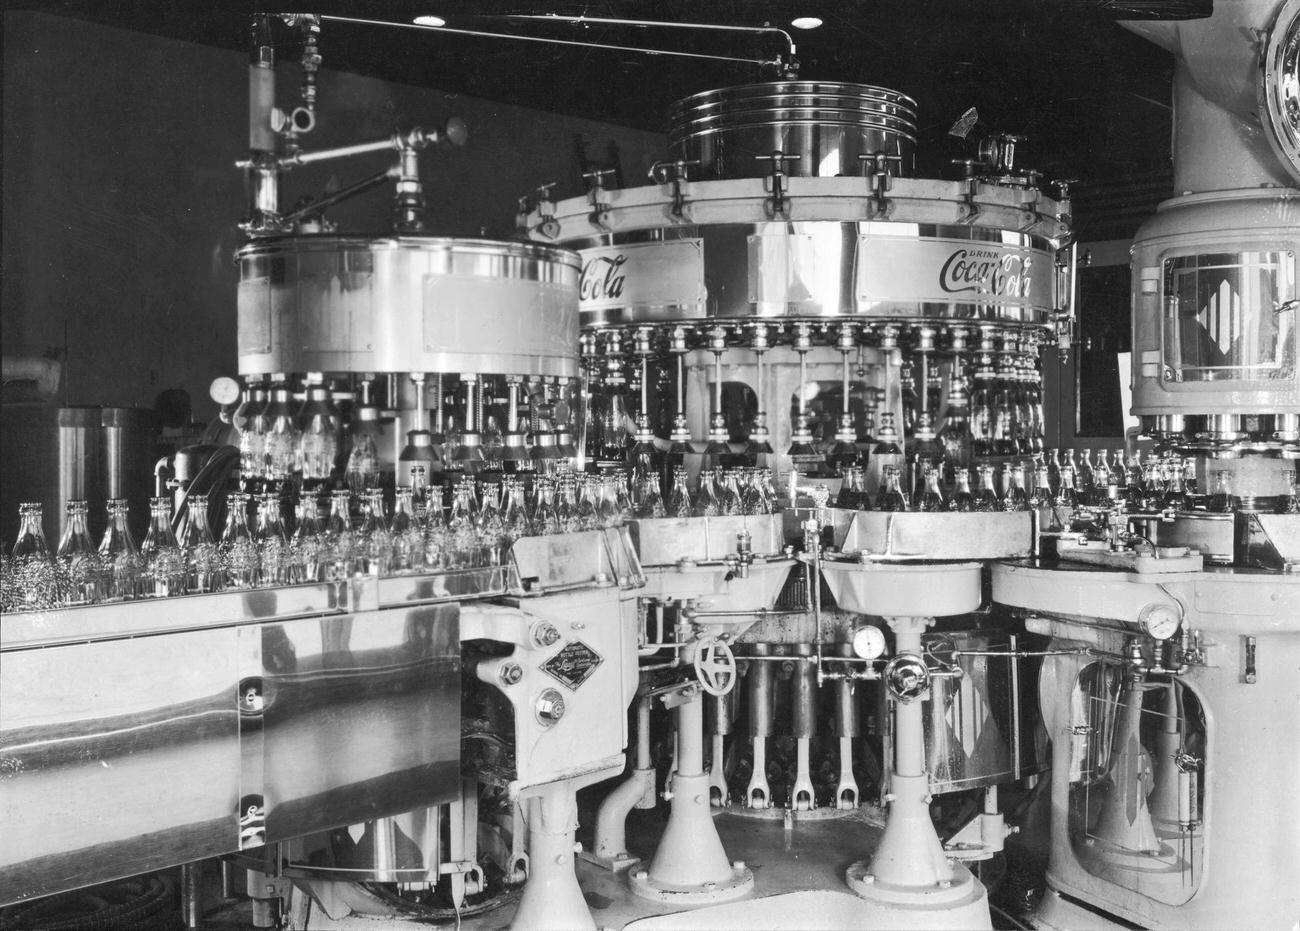 A Coca-Cola bottling plant, circa 1950.